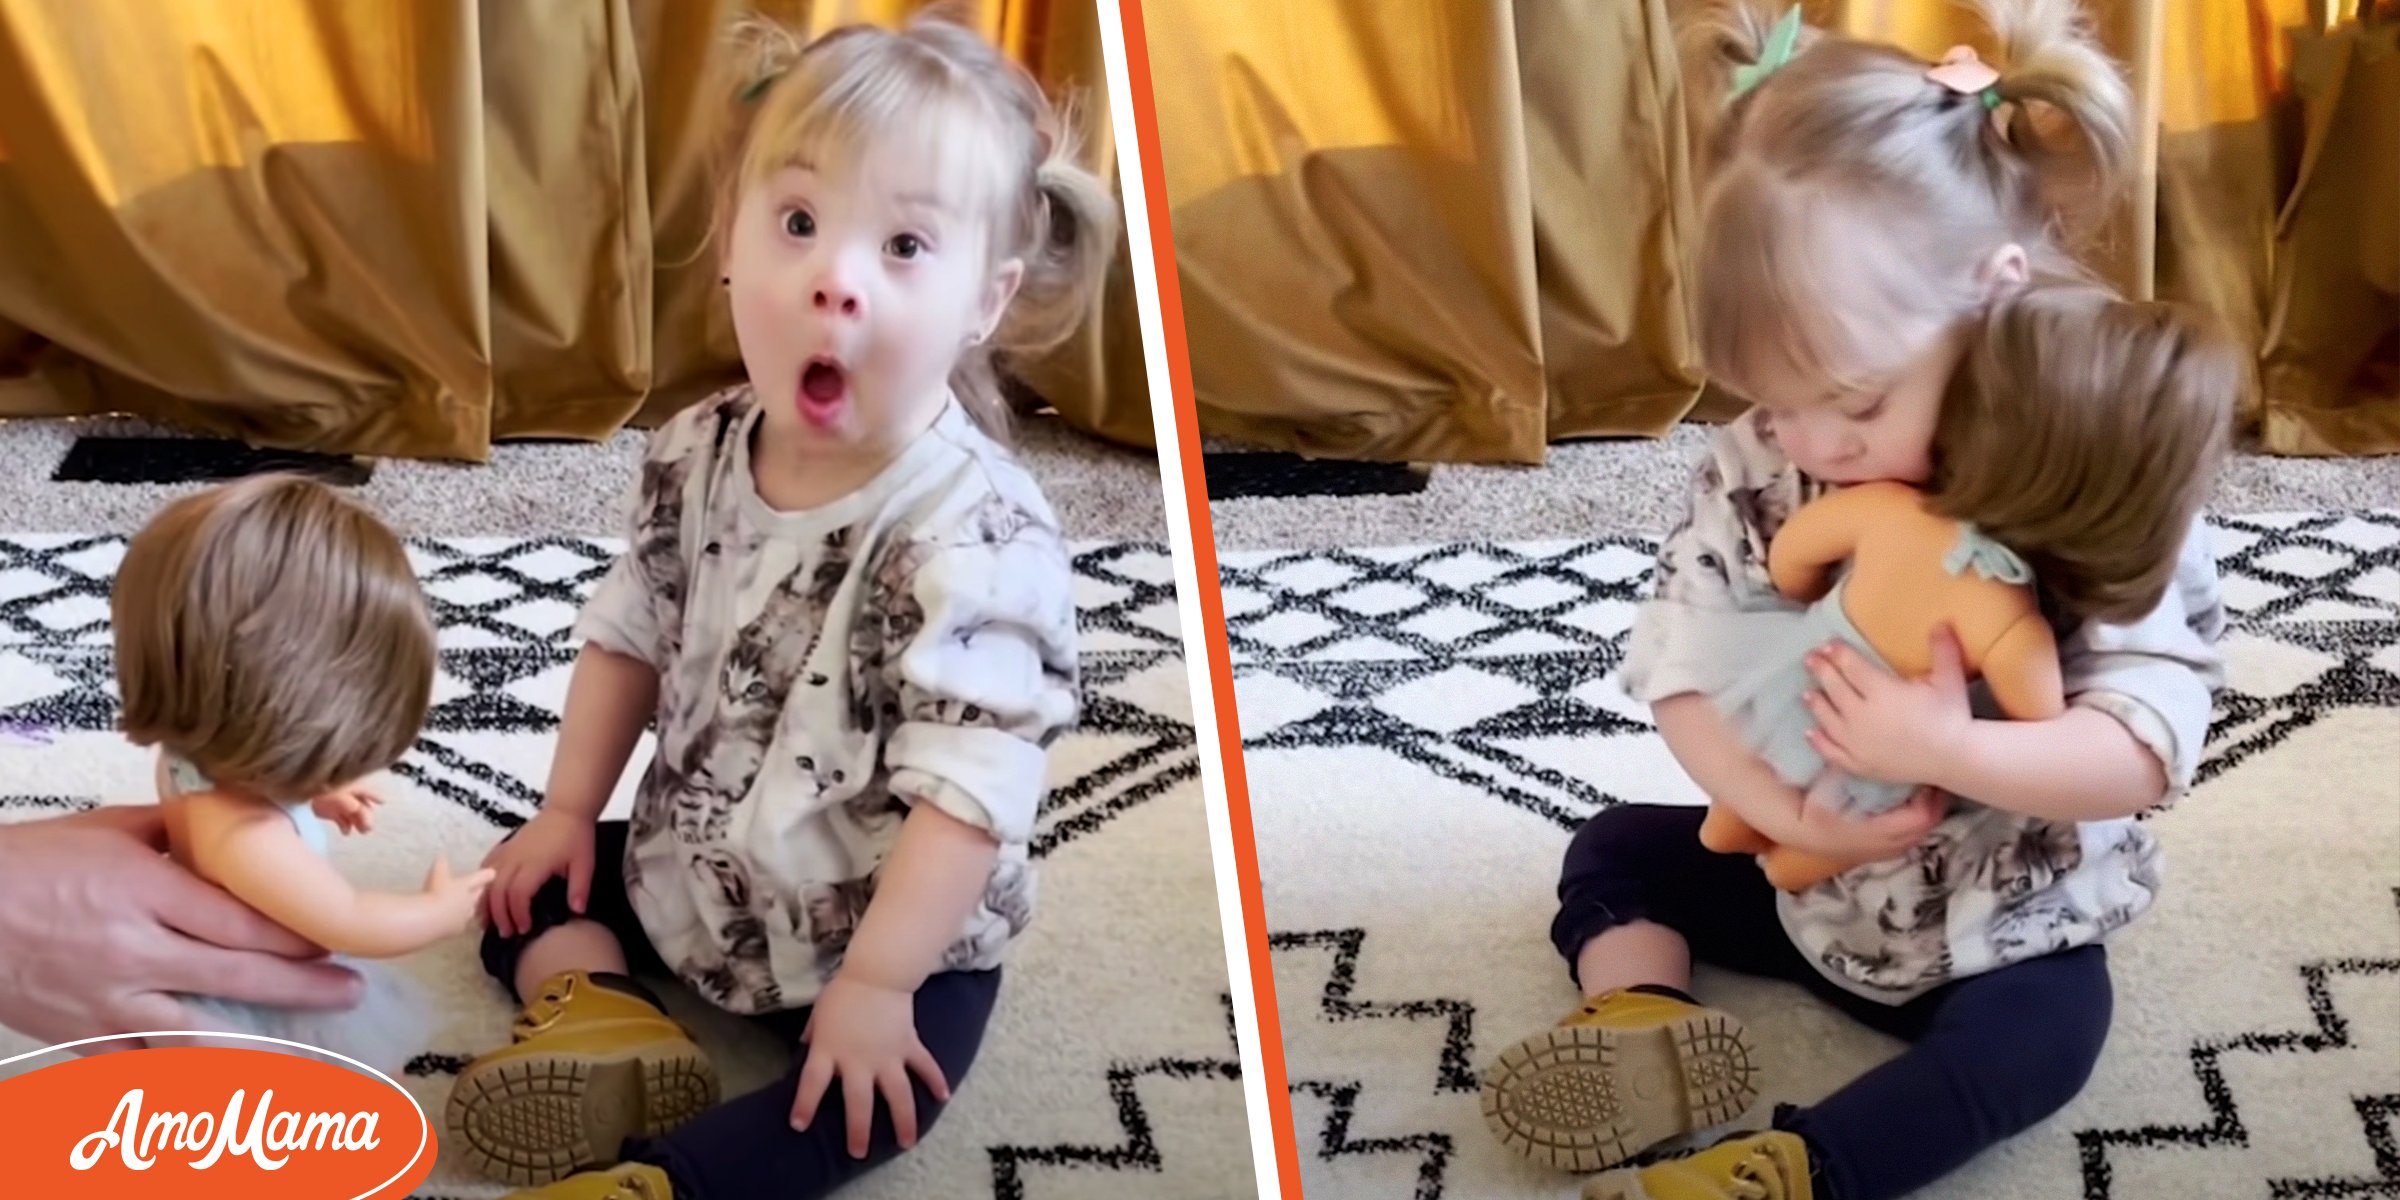 Une fillette de 2 ans étonnée de voir une poupée qui lui ressemble trait pour trait réagit de façon adorable